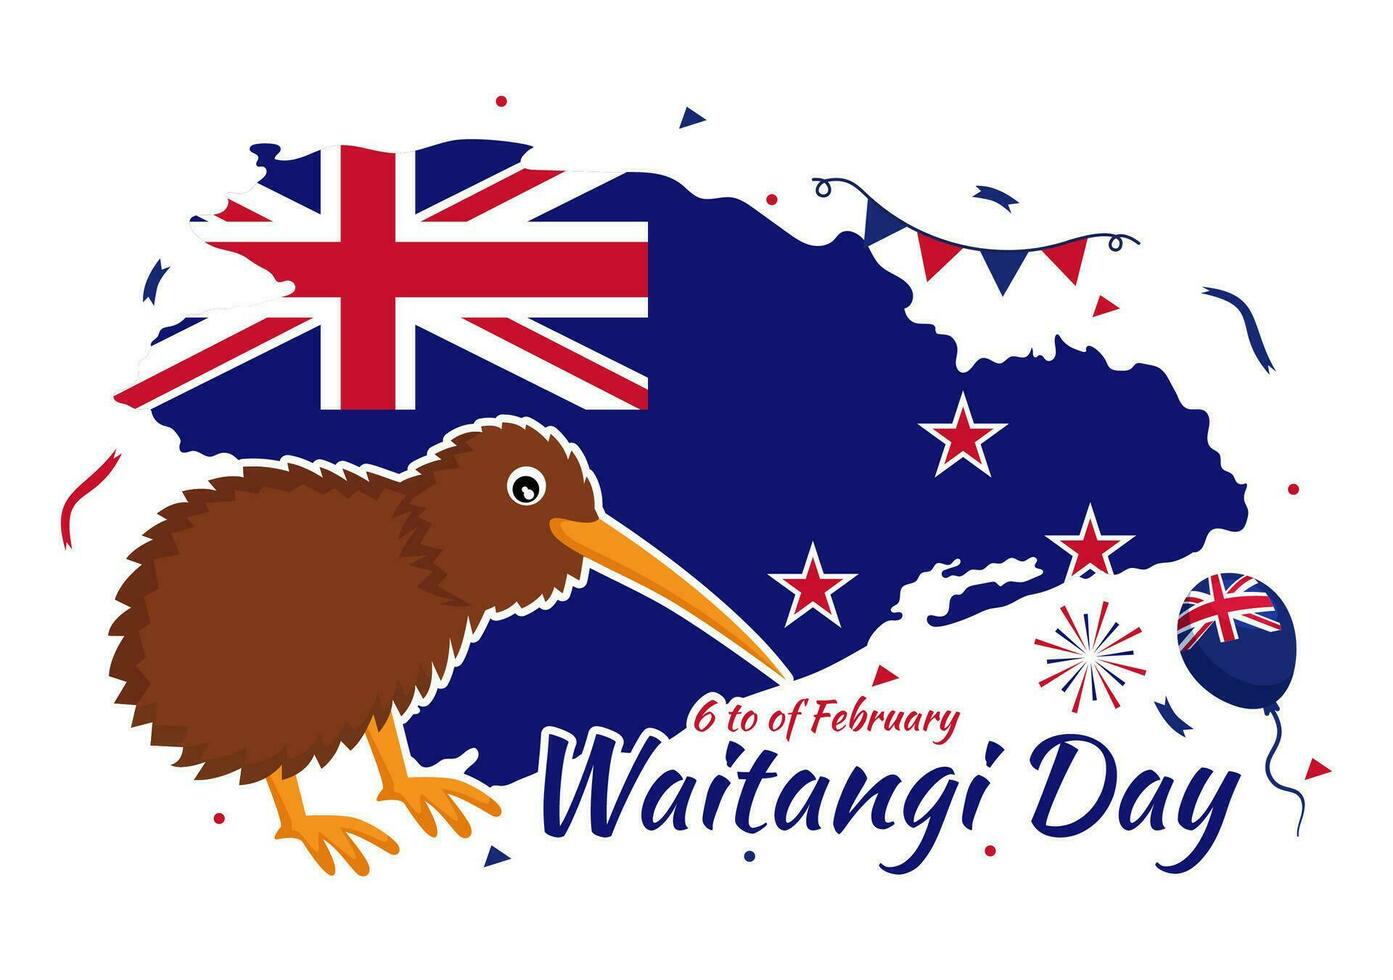 content attente journée vecteur illustration sur février 6 avec Nouveau zélande drapeau et carte dans nationale vacances plat dessin animé Contexte conception